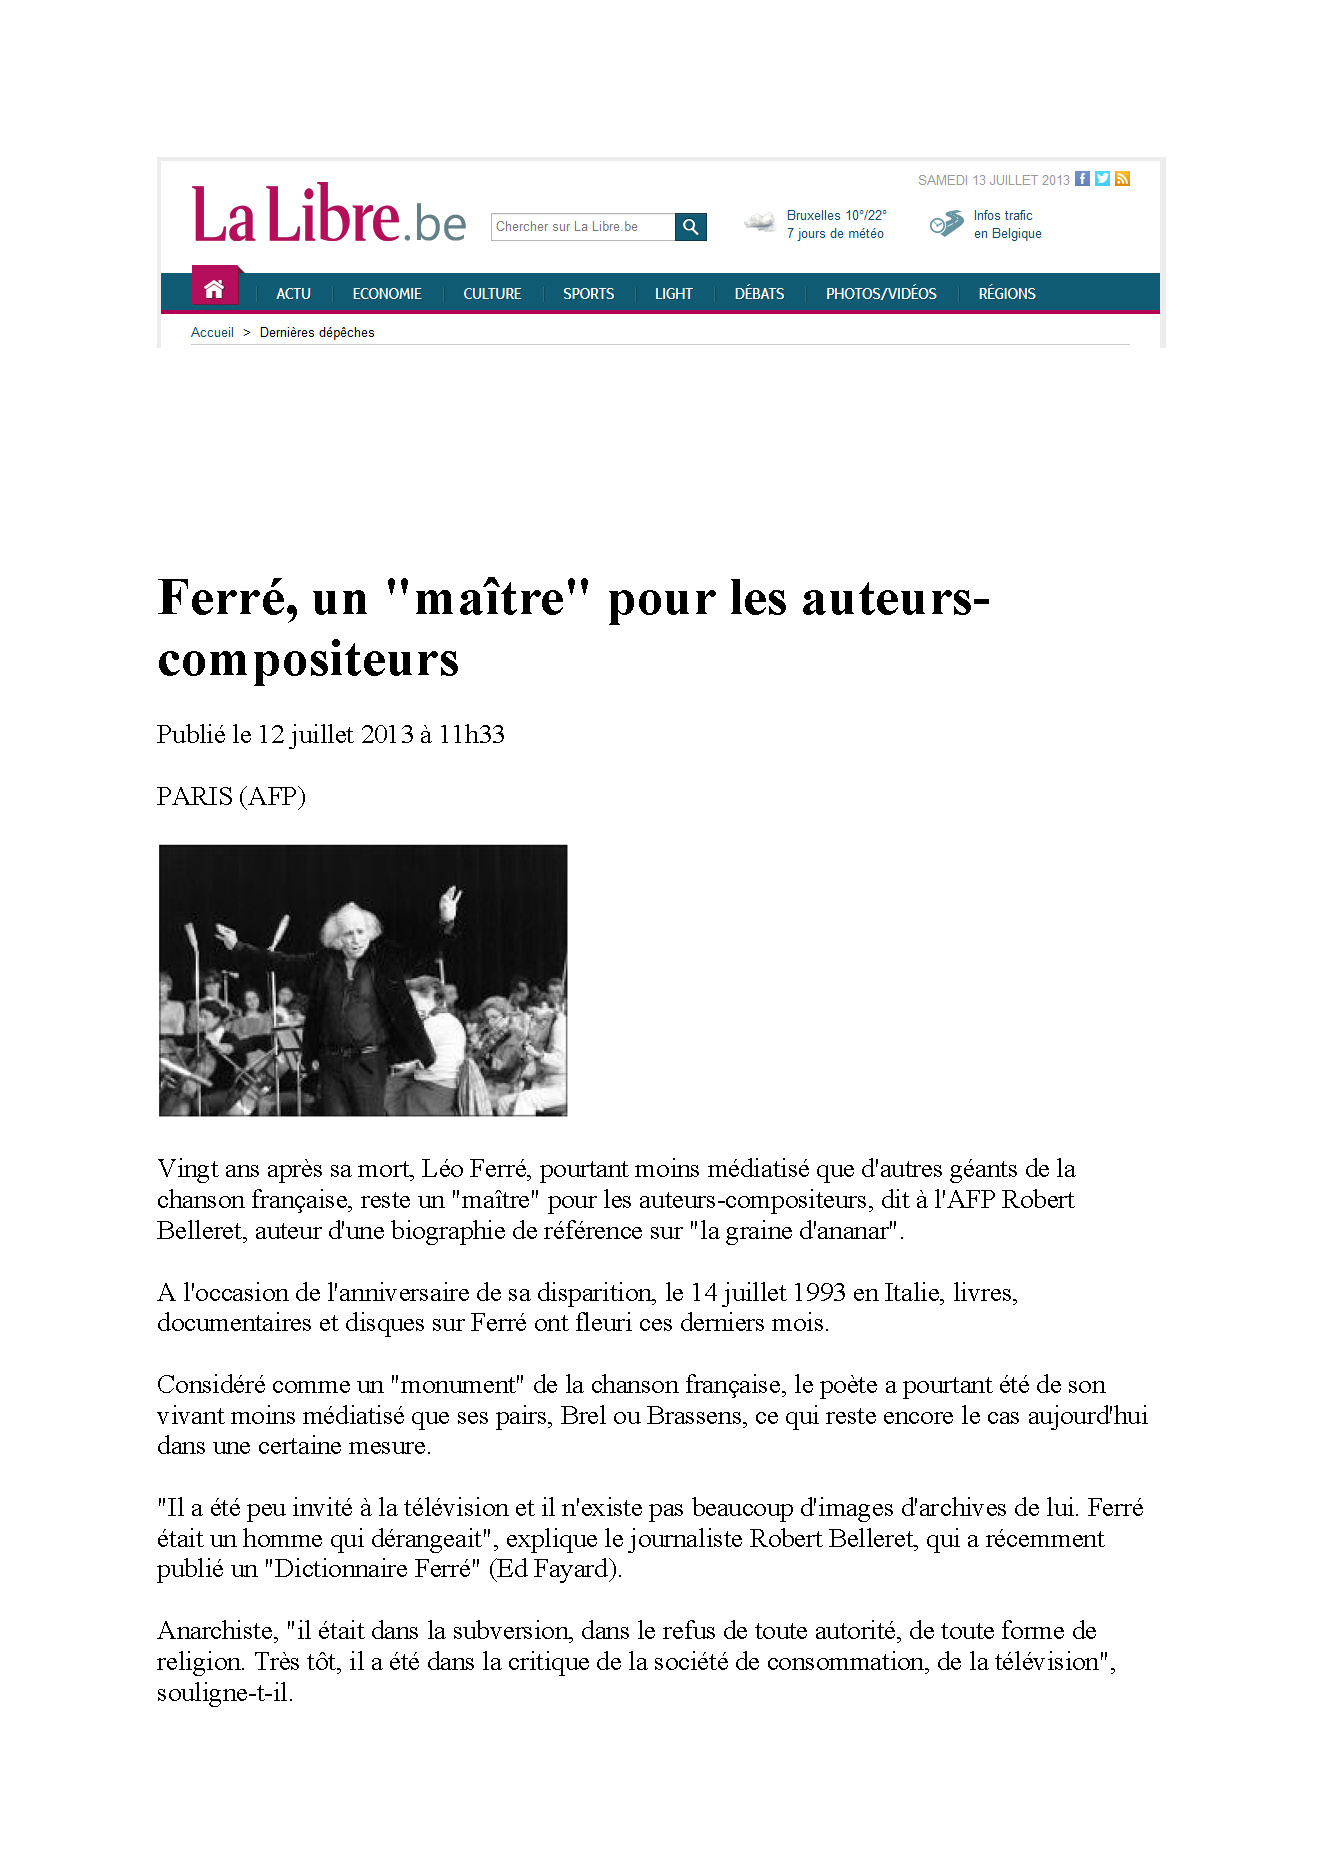 La Libre du 12/07/2013 Ferré un maître pour les auteurs-compositeurs